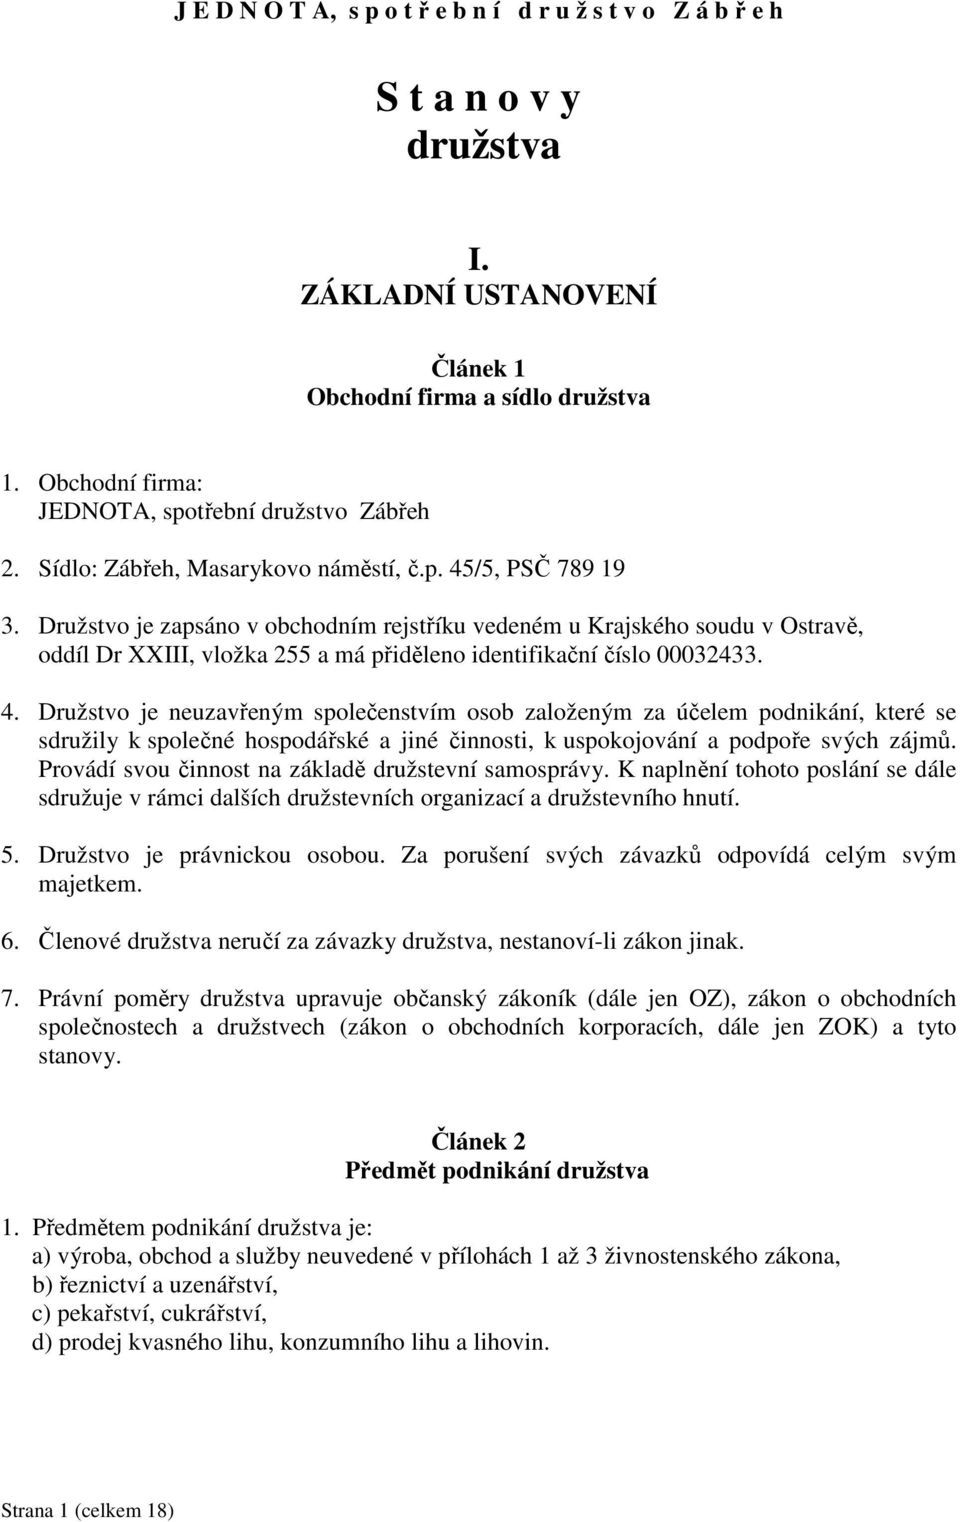 Družstvo je zapsáno v obchodním rejstříku vedeném u Krajského soudu v Ostravě, oddíl Dr XXIII, vložka 255 a má přiděleno identifikační číslo 00032433. 4.